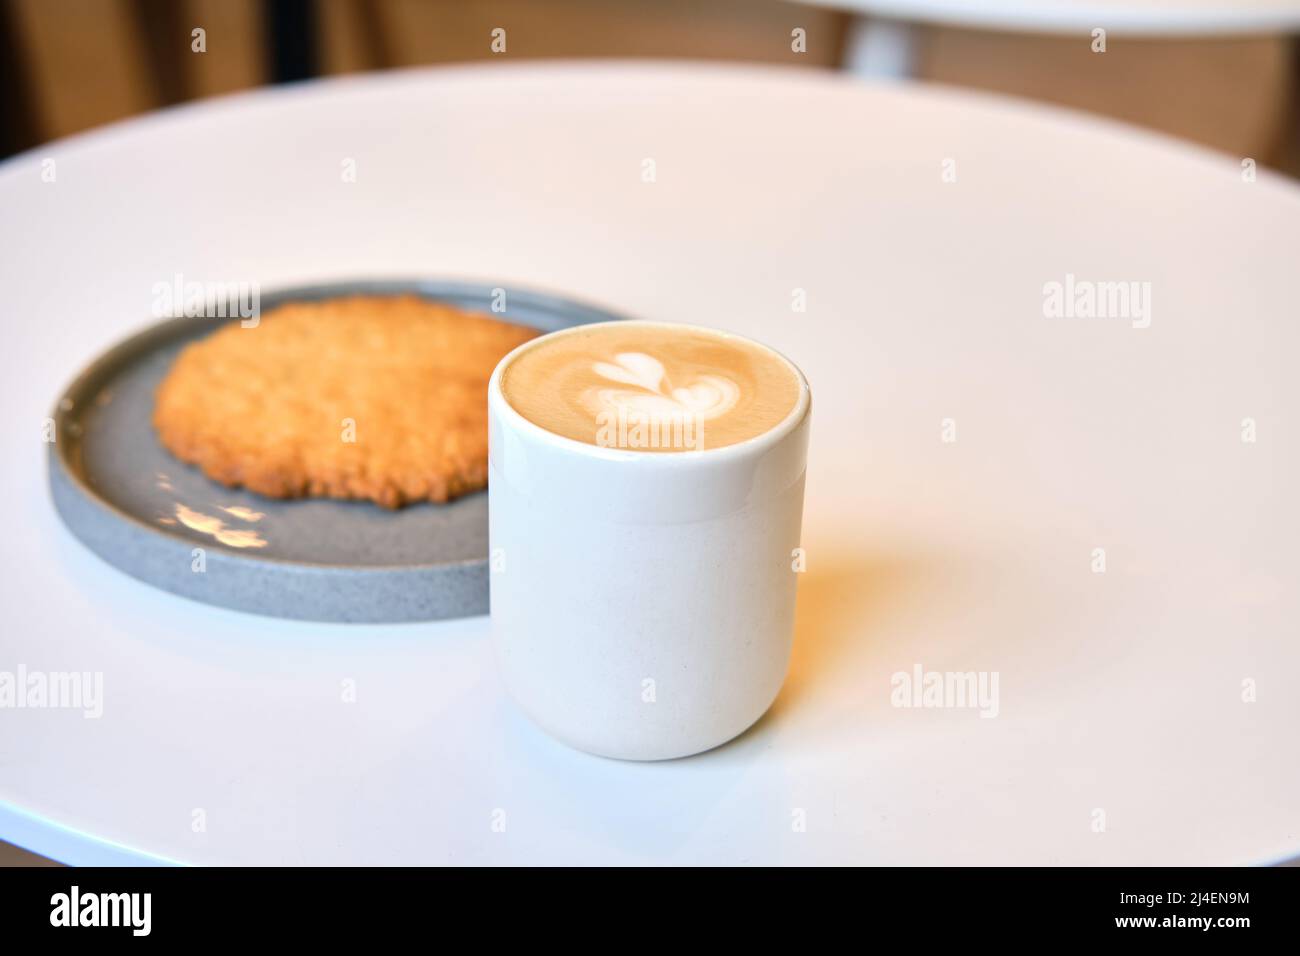 Der morgendliche Brunch im Café ist auf dem Tisch. Riesenkeks und Cappuccino mit schönem Milchschaum. Manchmal muss man in dieser schnelllebigen Welt eine Pause einlegen Stockfoto